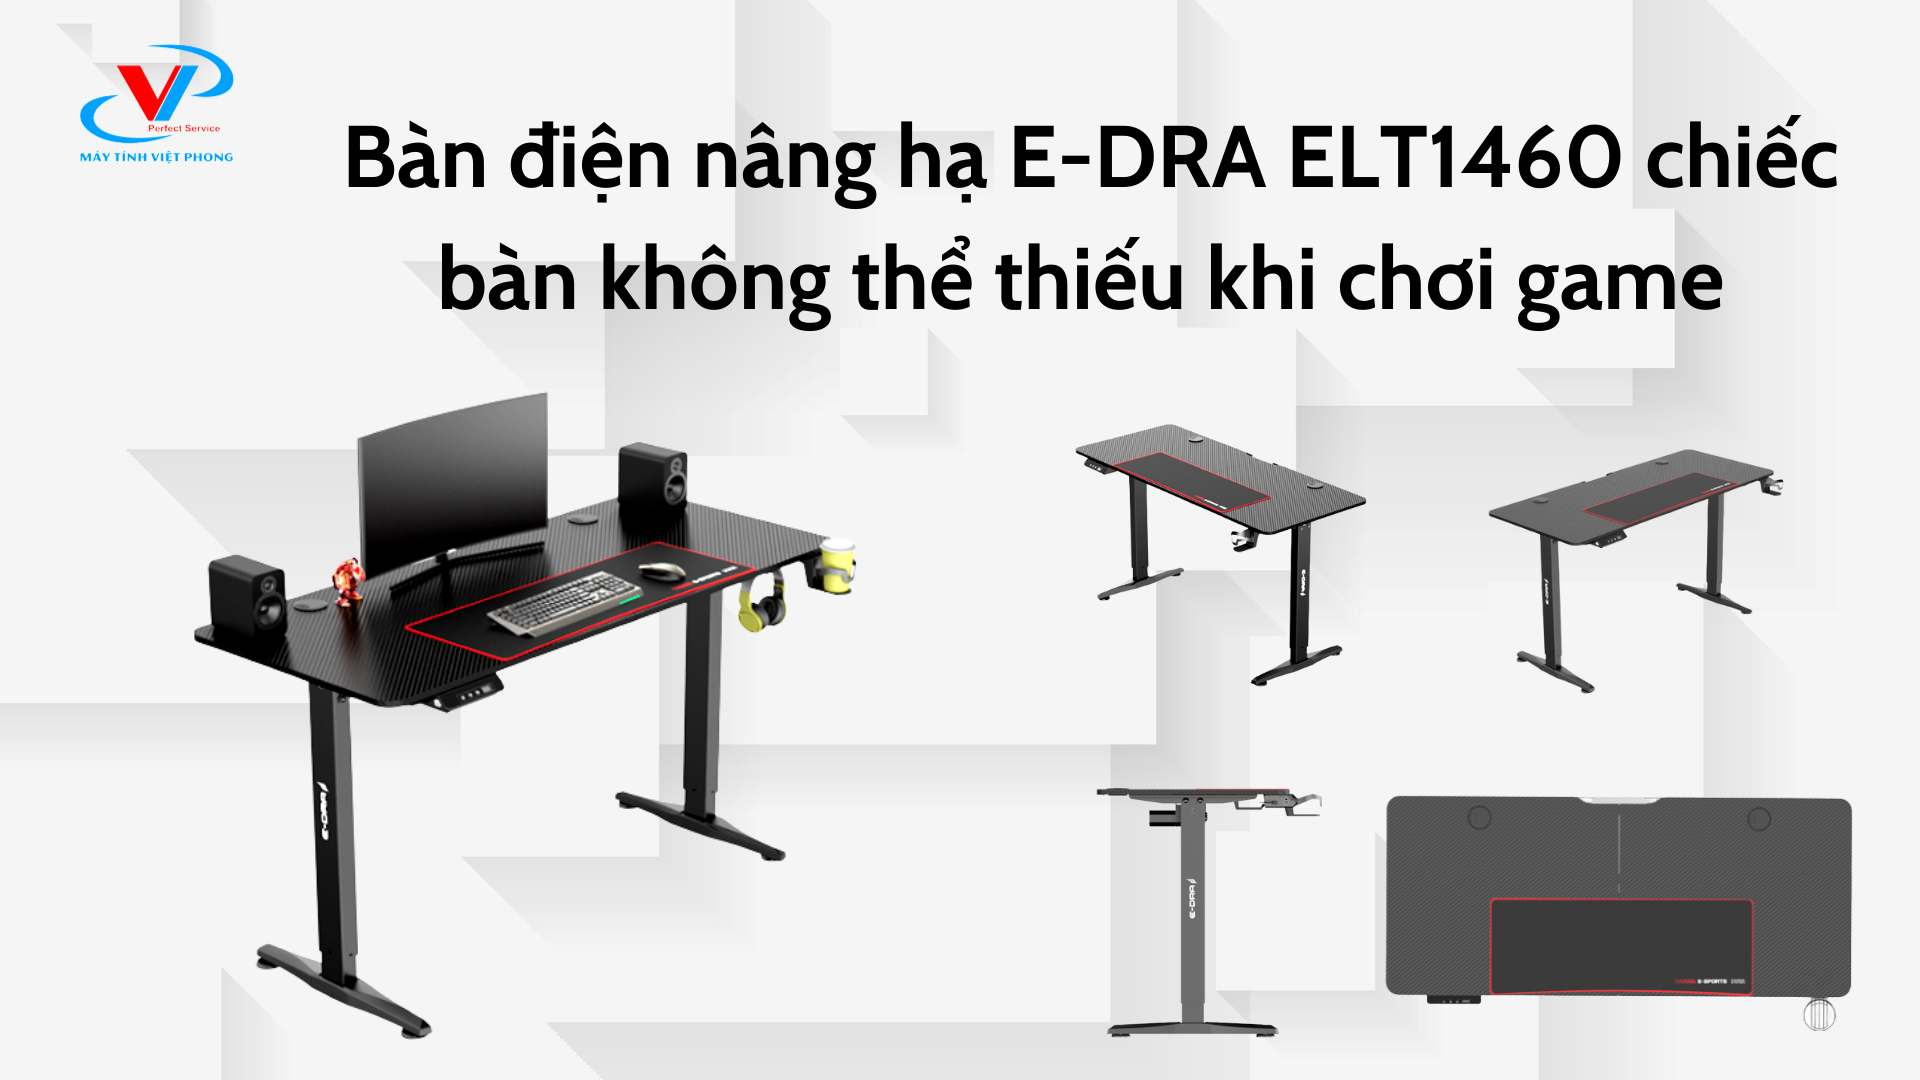  Bàn điện nâng hạ E-DRA ELT1460 chiếc bàn không thể thiếu khi chơi game 